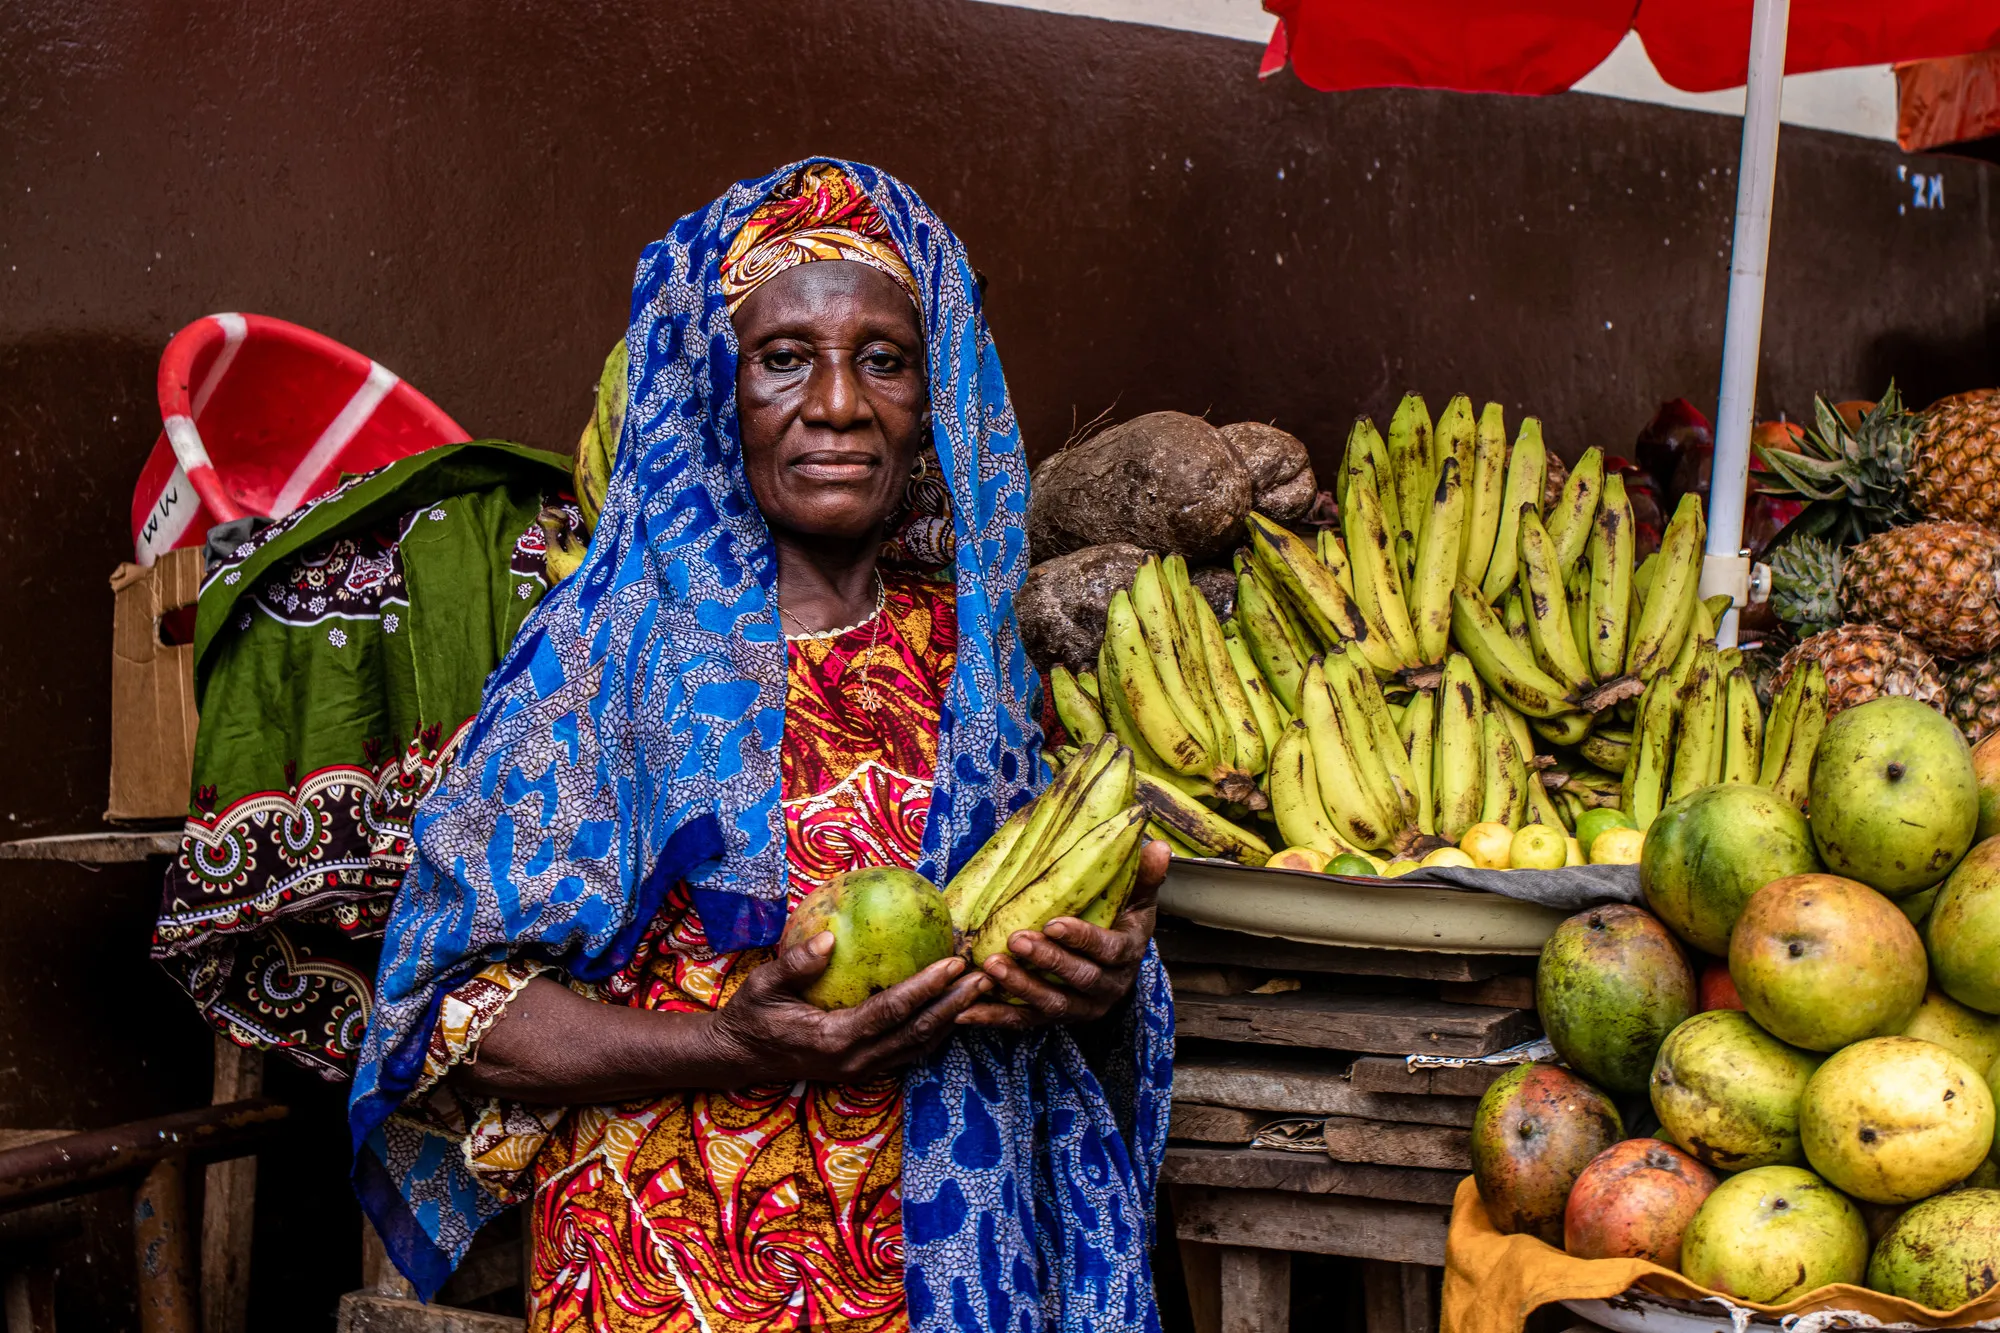 Une femme à un stand de fruits détient des bananes et autres fruits.